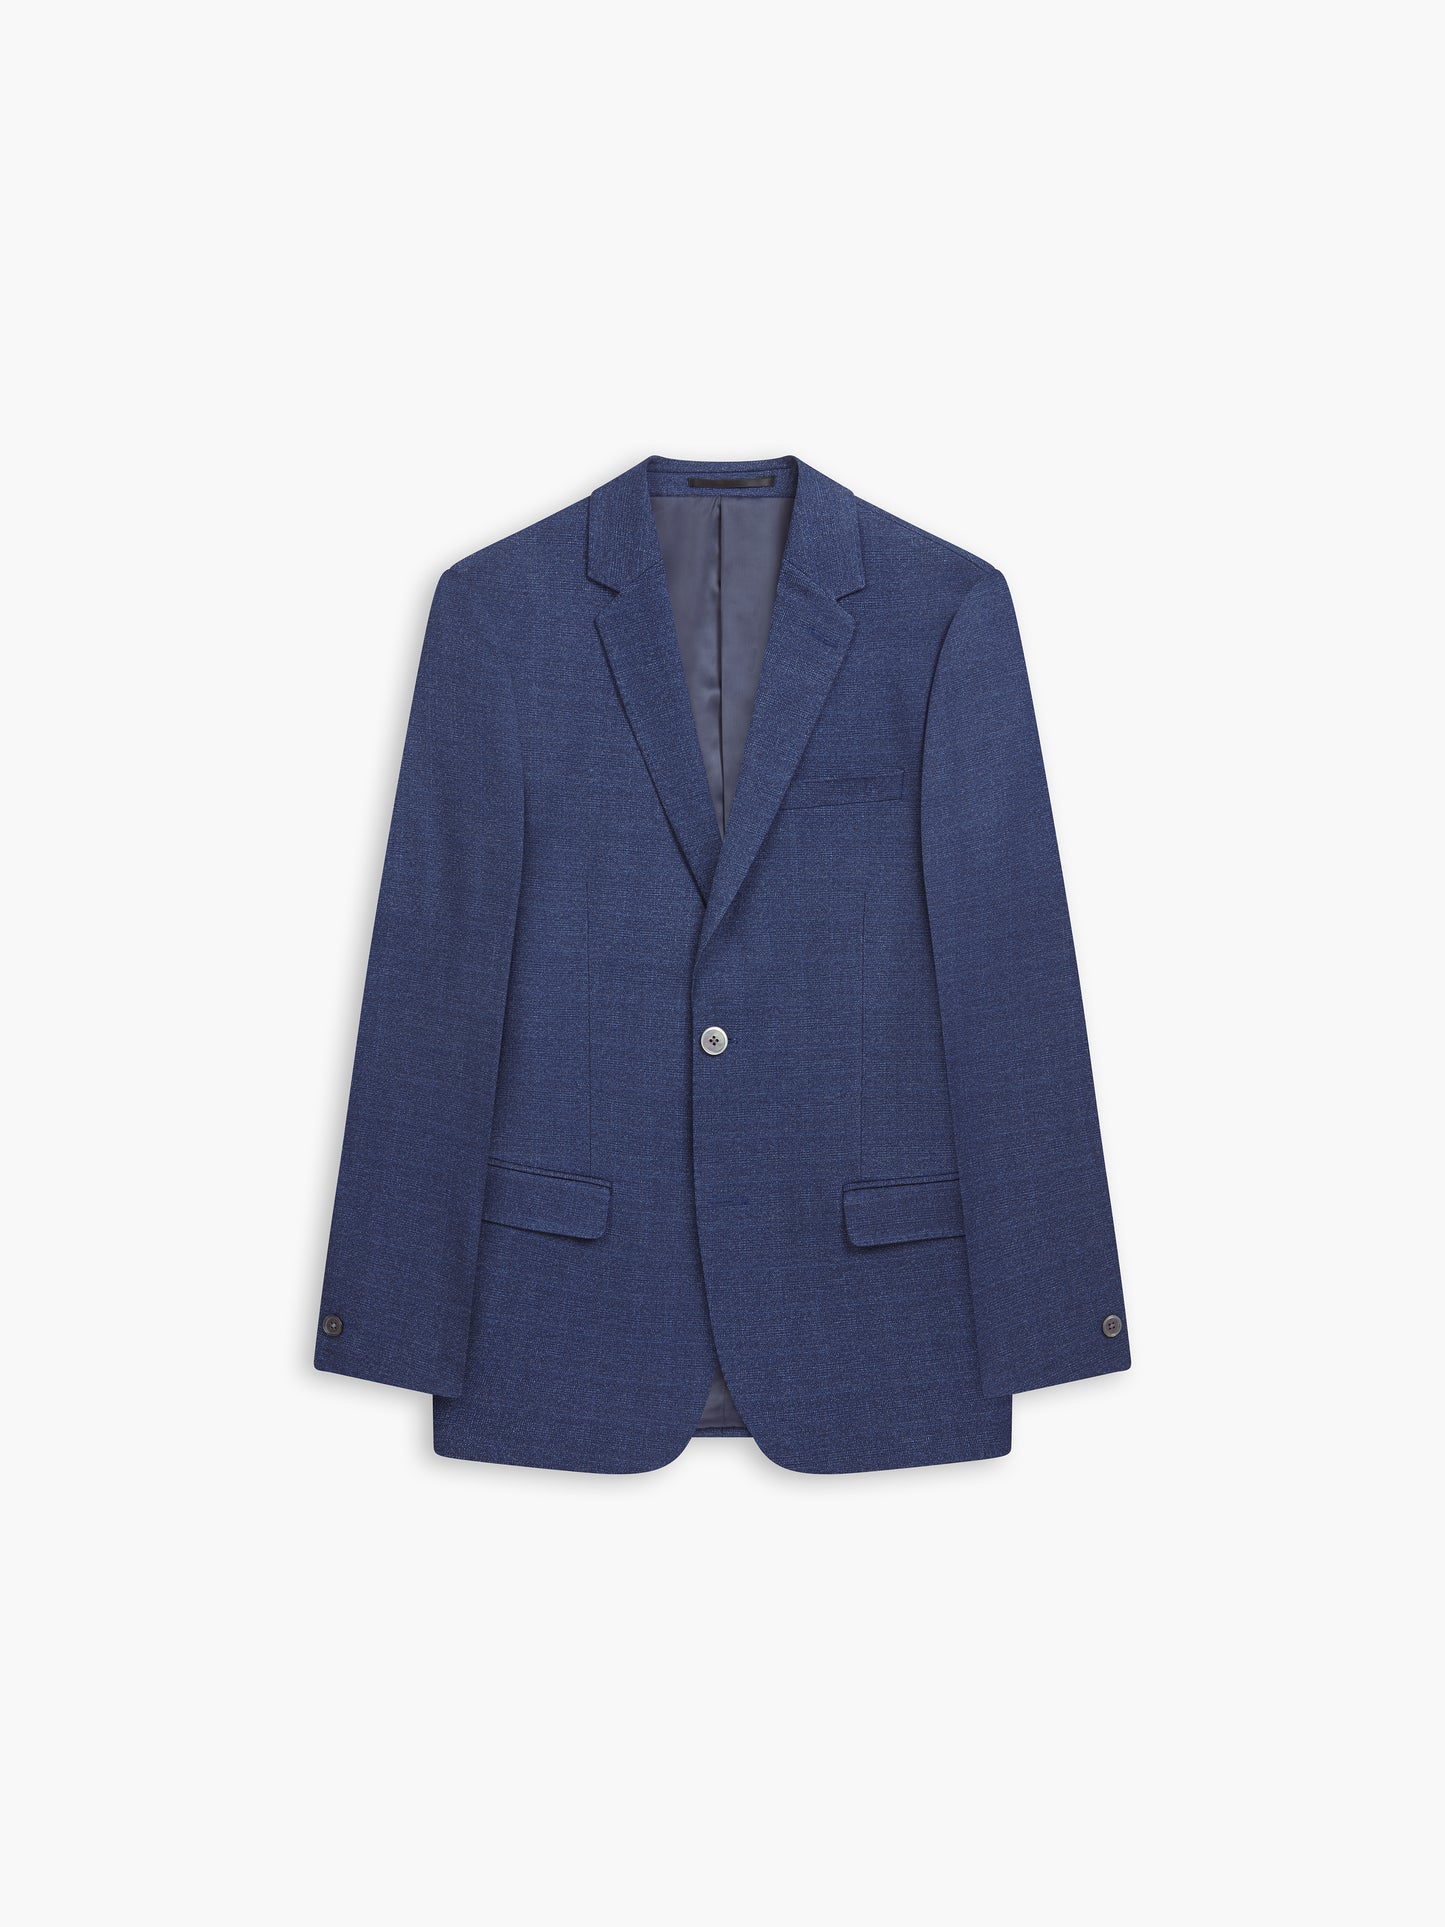 Oasis Navy Blue Semi Plain Jacket